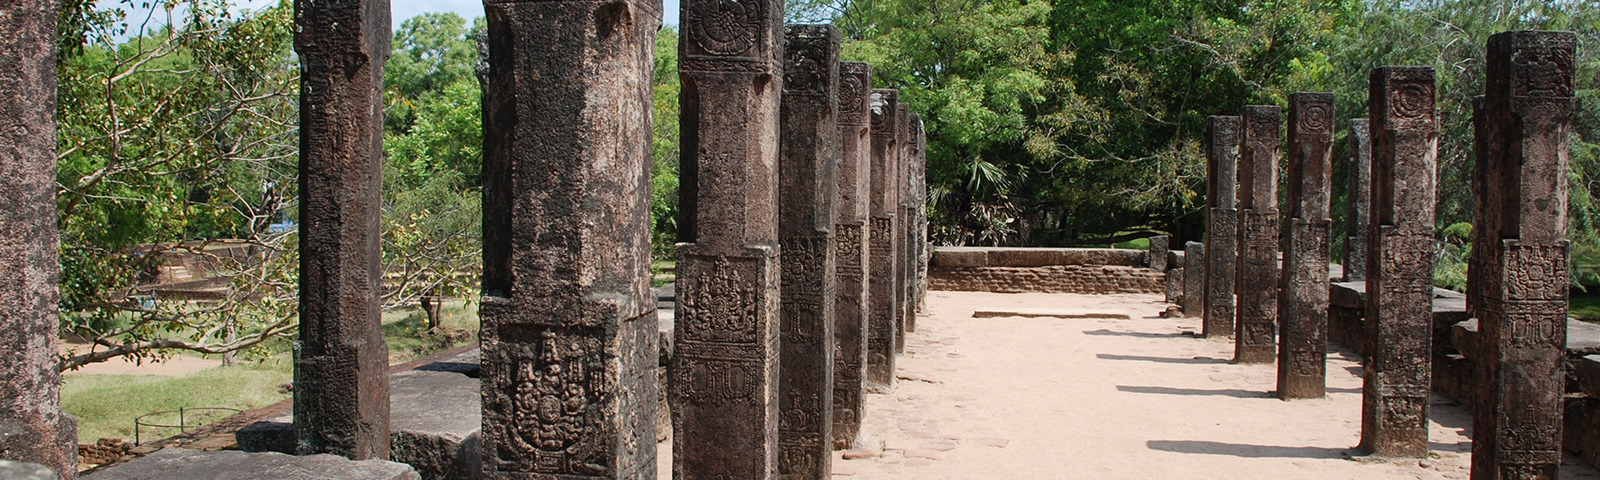 Heritage Site in Sri Lanka